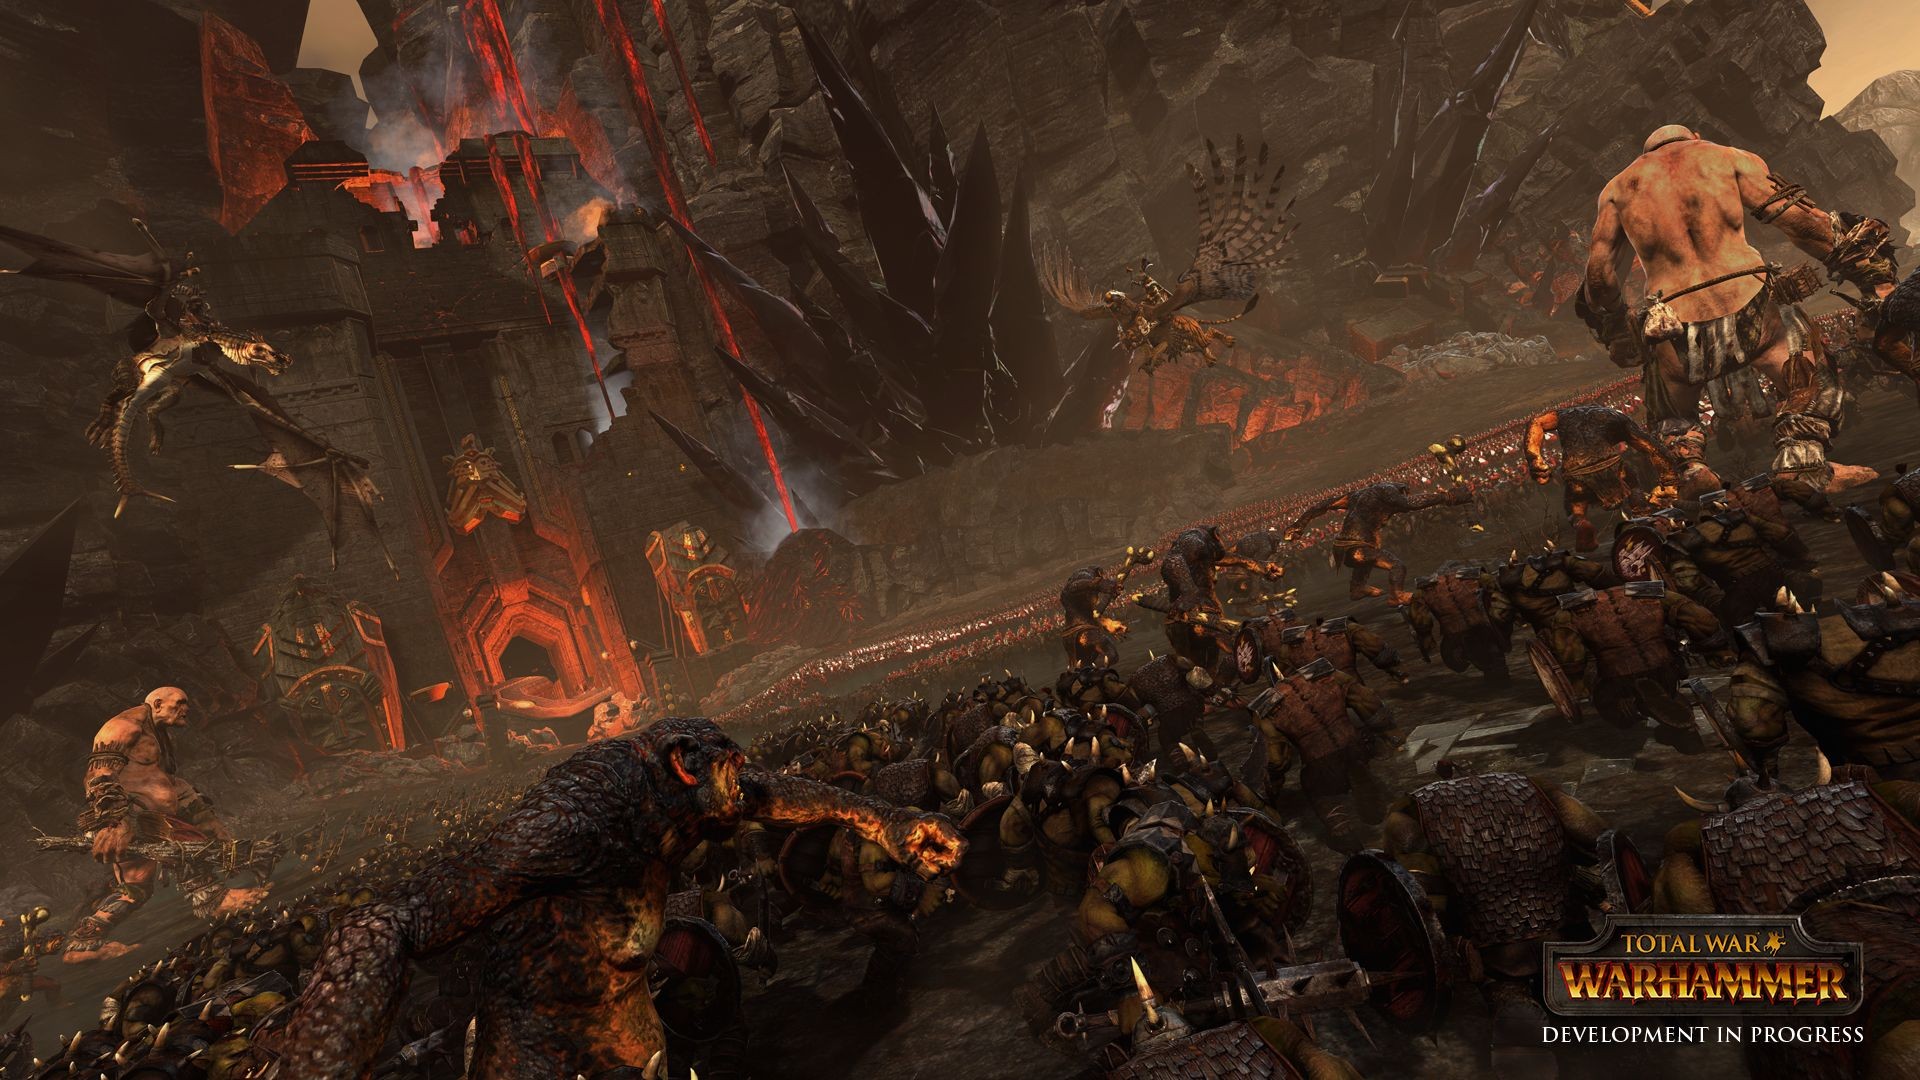 General 1920x1080 Total War: Warhammer orcs Fantasy Battle Warhammer PC gaming